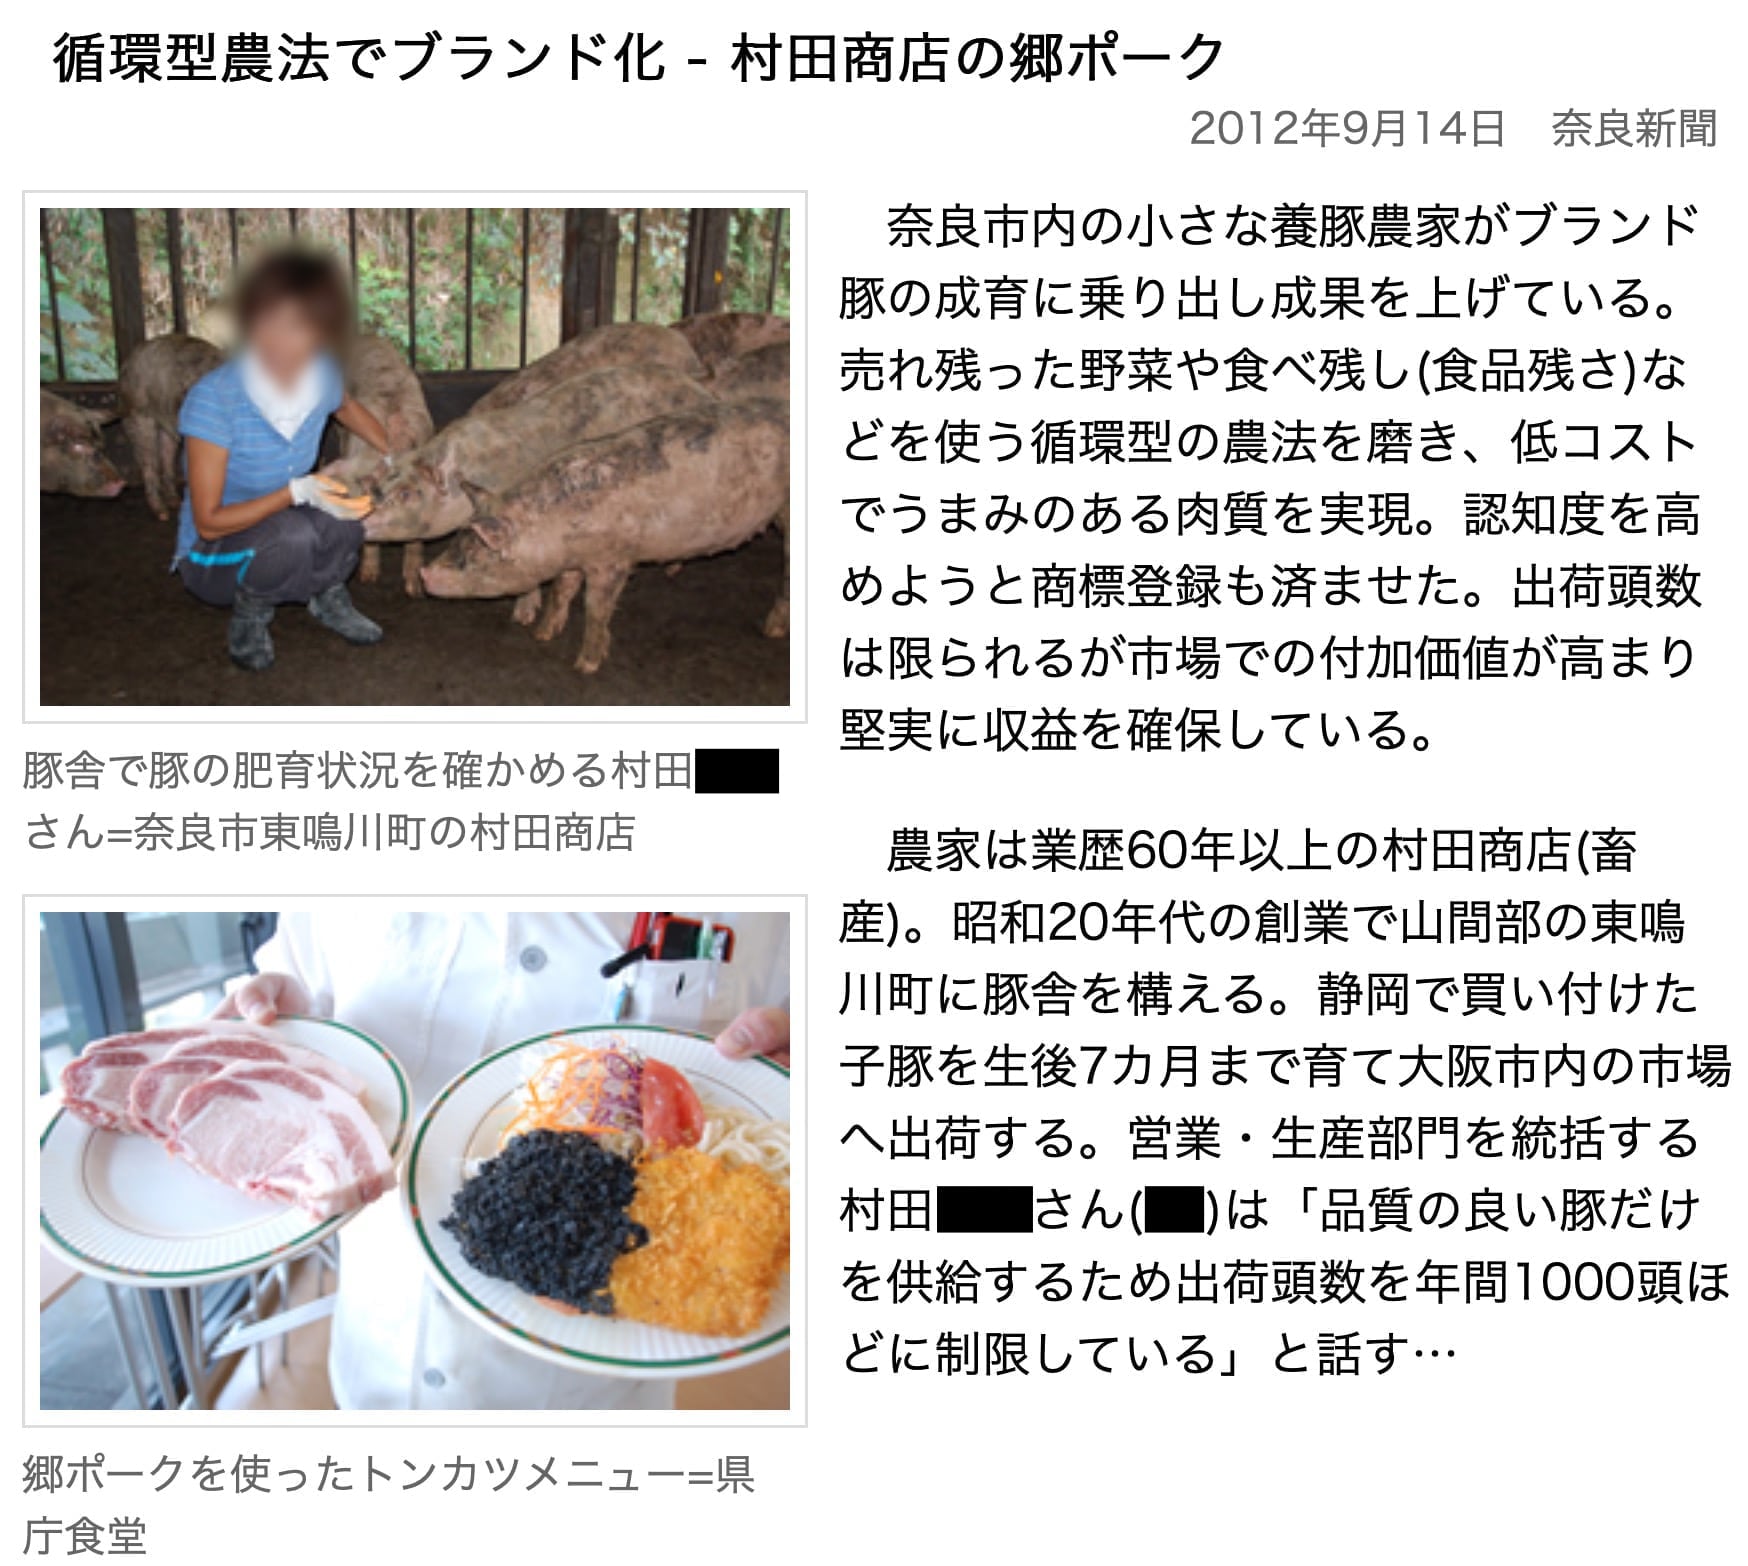 循環型農法でブランド化 - 村田商店の郷ポーク　2012年9月14日　奈良新聞